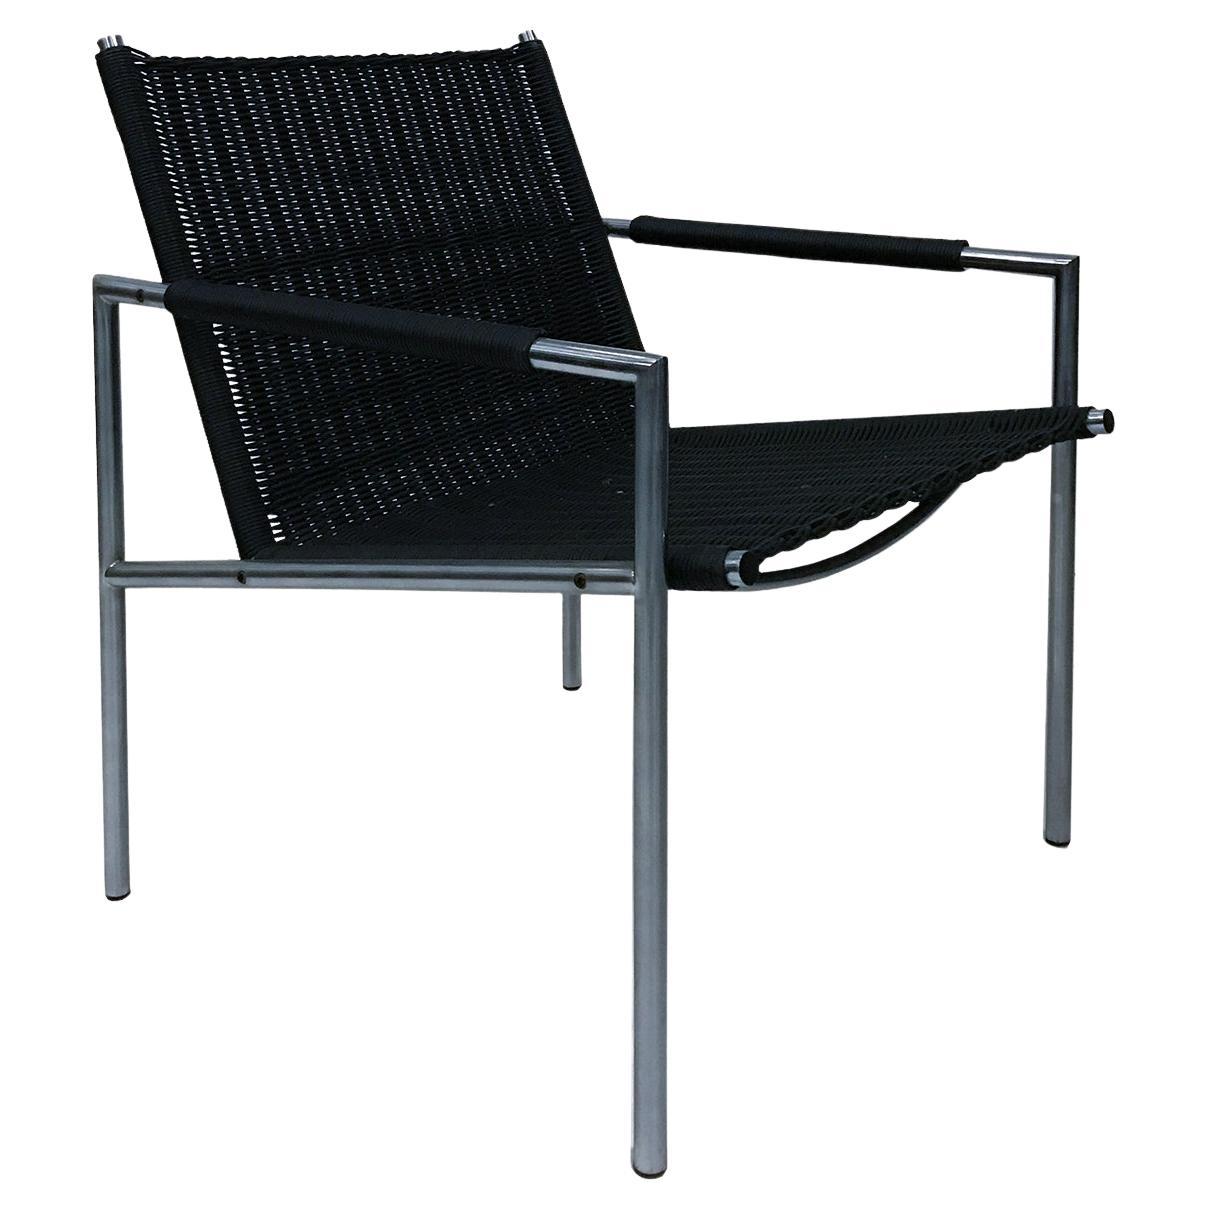 1965, Martin Visser, SZ01 Easy Chair aus sehr seltenem schwarzem künstlichem Schilfrohr